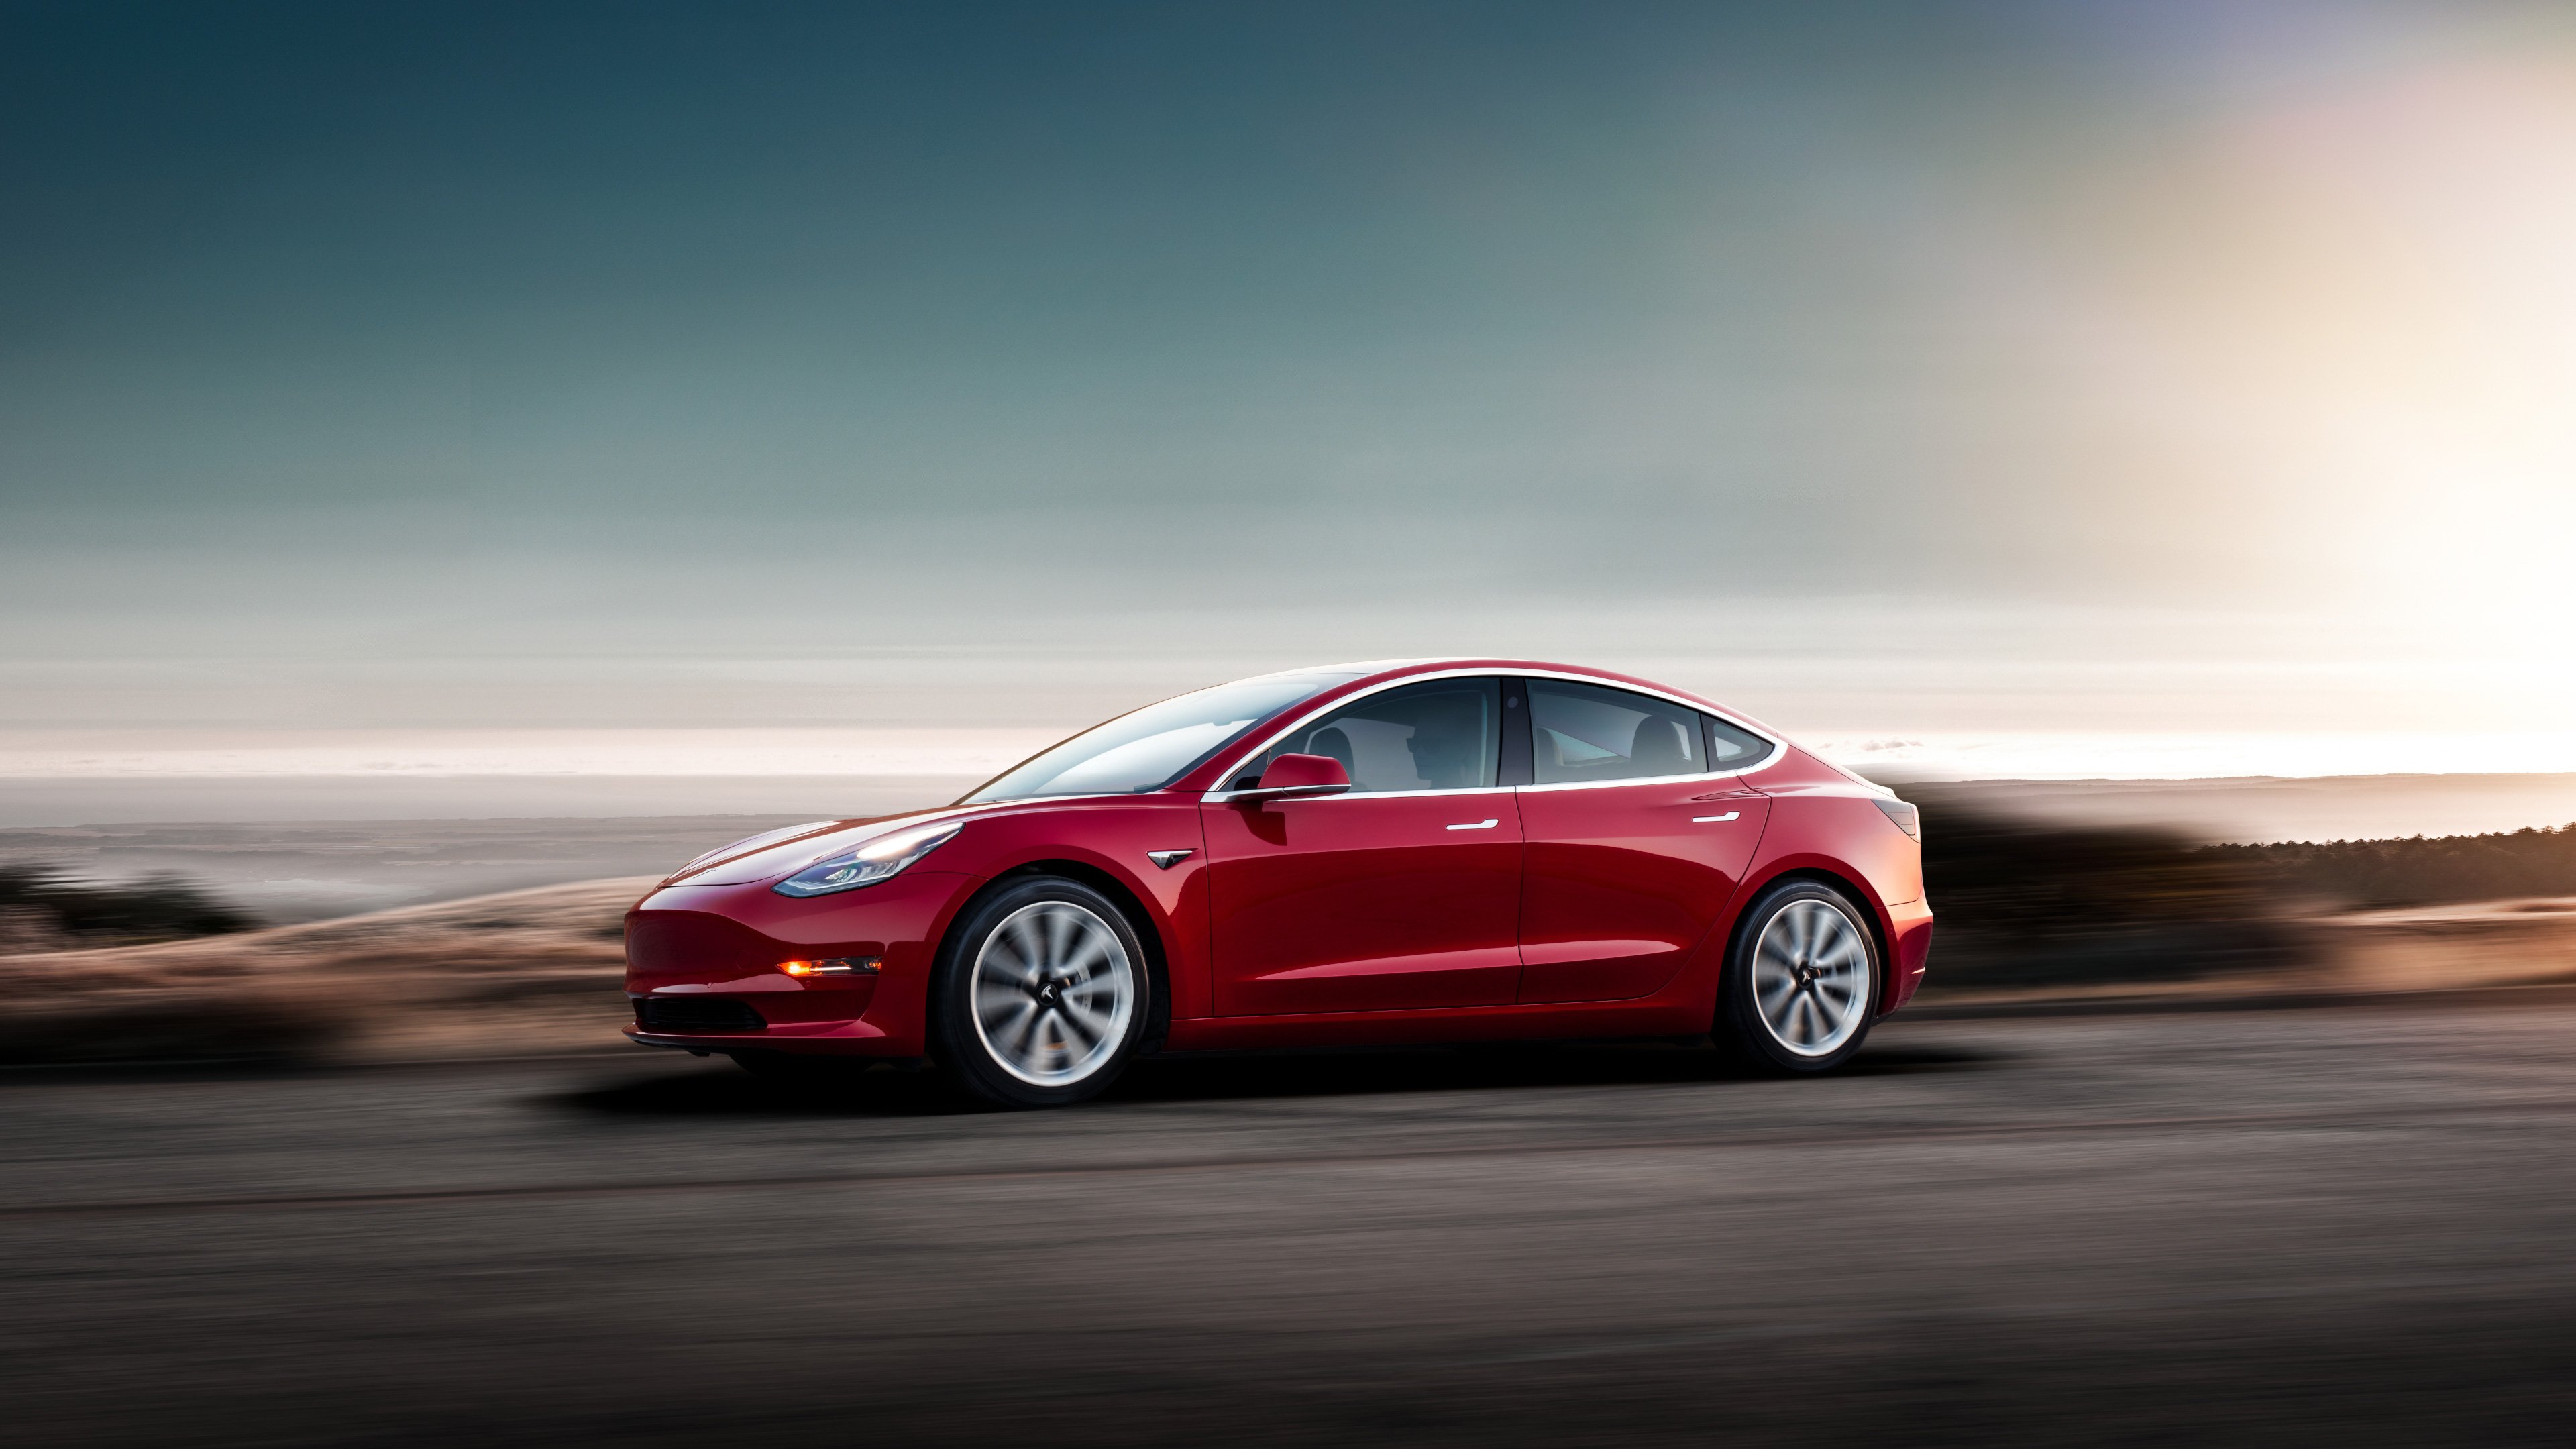 Tesla Model HD Cars, 4k Wallpaper, Image, Background